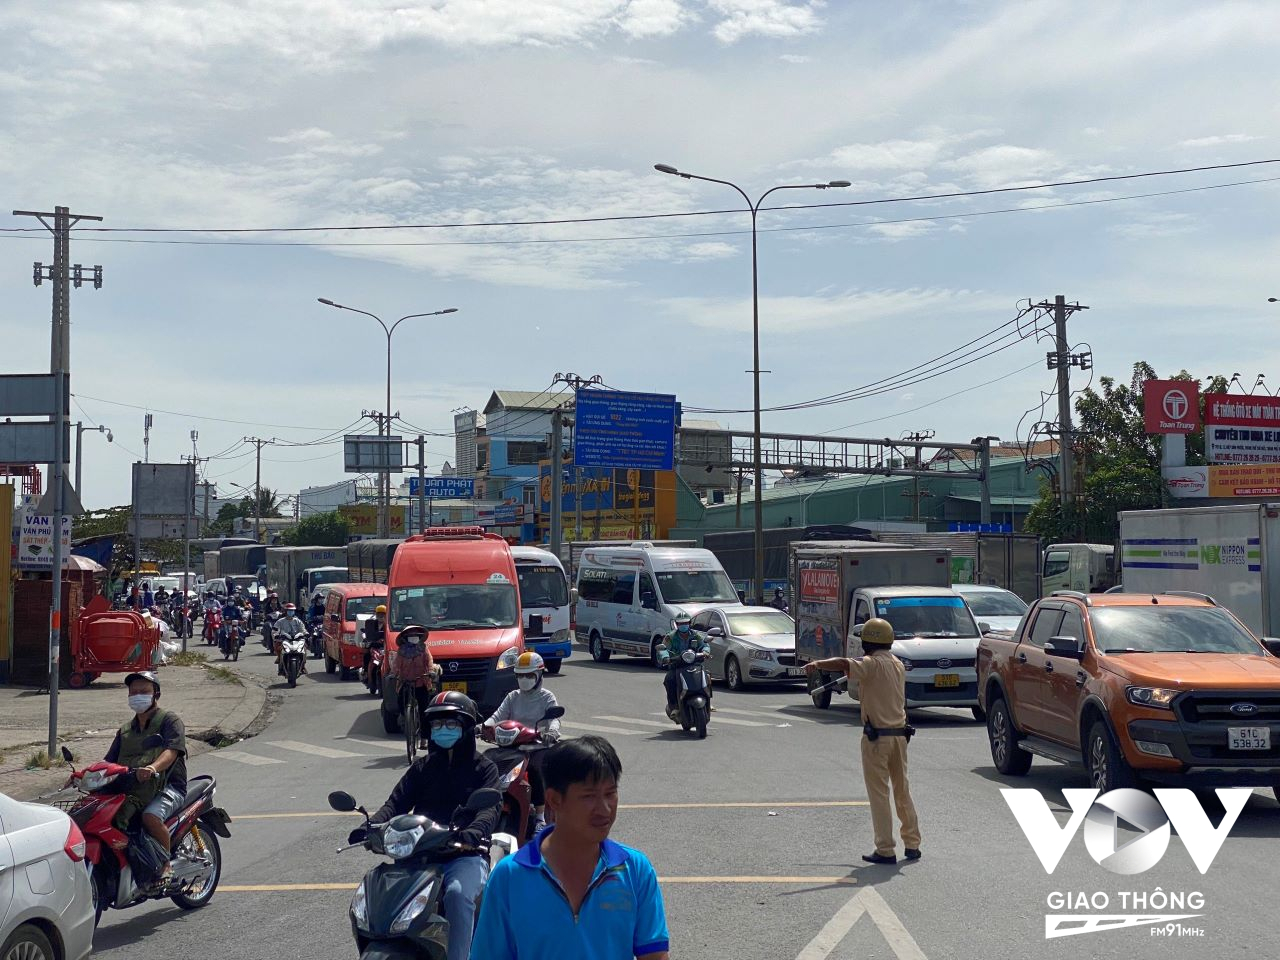 Ảnh hưởng của vụ việc khiến giao thông tại ngã 4 Bình Phước, nhất là 2 hướng trên QL13 bị kẹt xe kèo dài, nhiều phương tiện “chôn chân” giữa trưa nắng